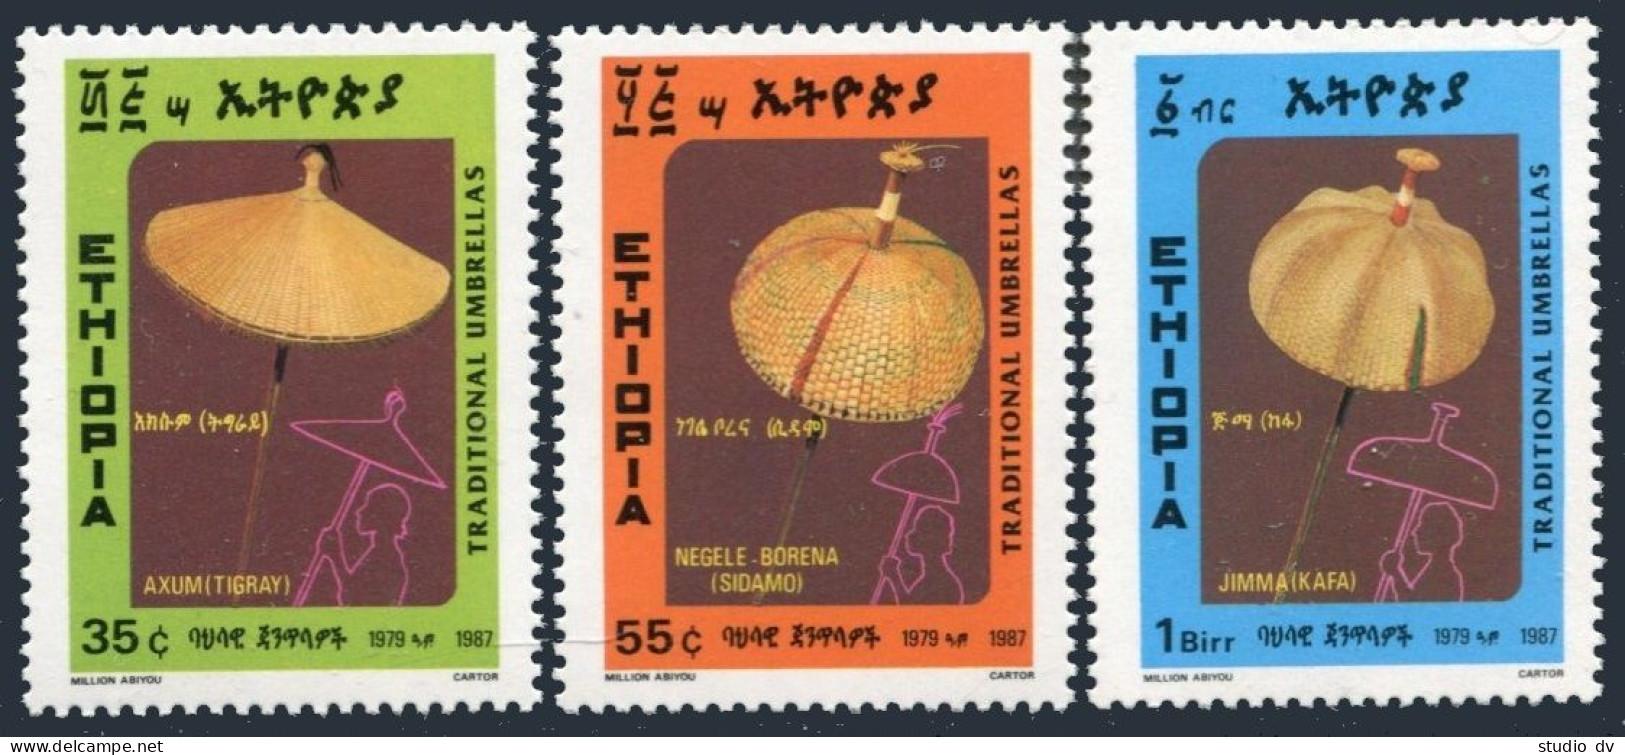 Ethiopia 1170-1172, MNH. Michel 1256-1258. Umbrellas 1987. - Ethiopia